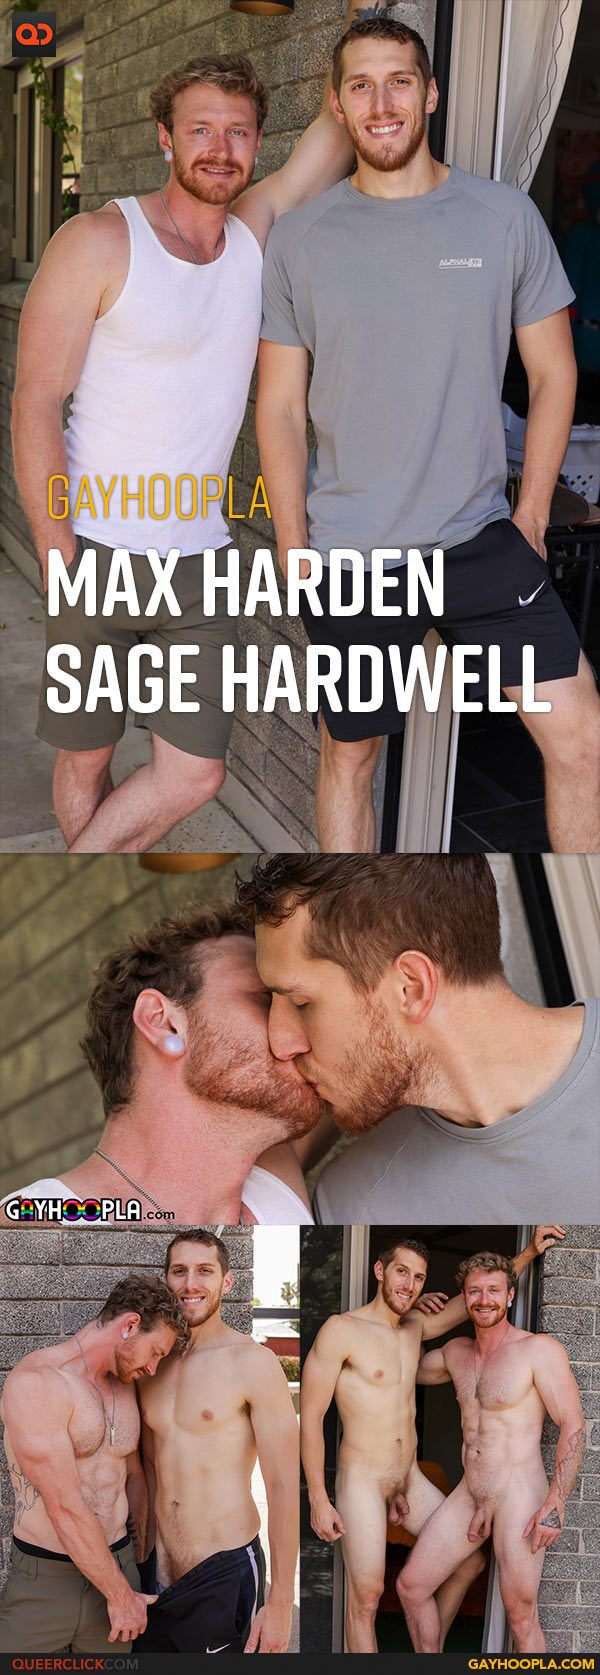 Gayhoopla: Max Harden Fucks Sage Hardwell